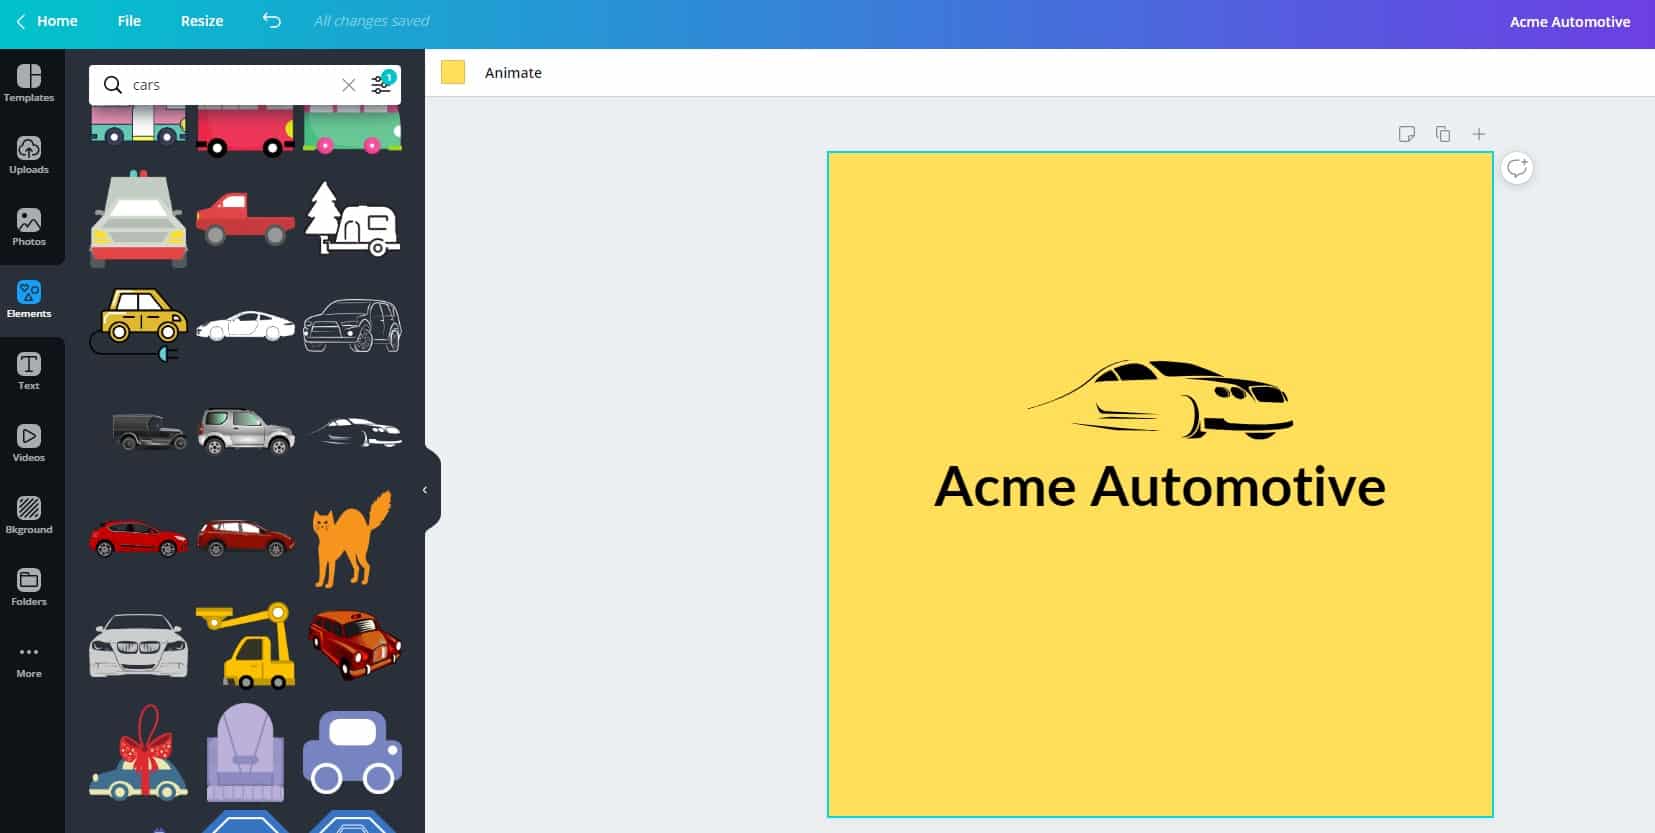 Additional Style Elements - Acme Automotive Image